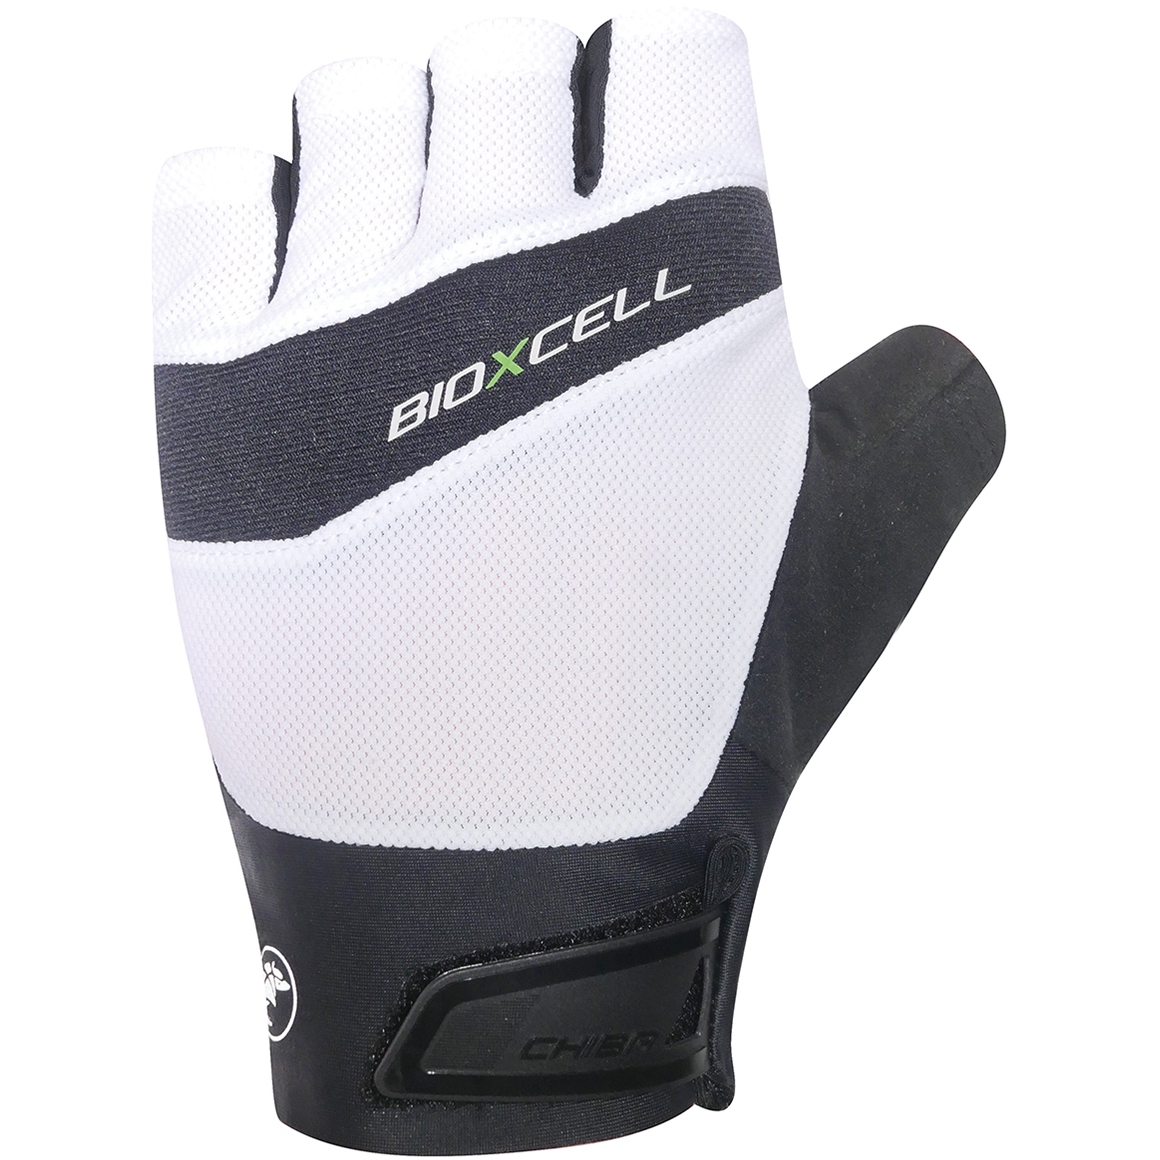 Productfoto van Chiba BioXCell Pro Handschoenen met Korte Vingers - wit